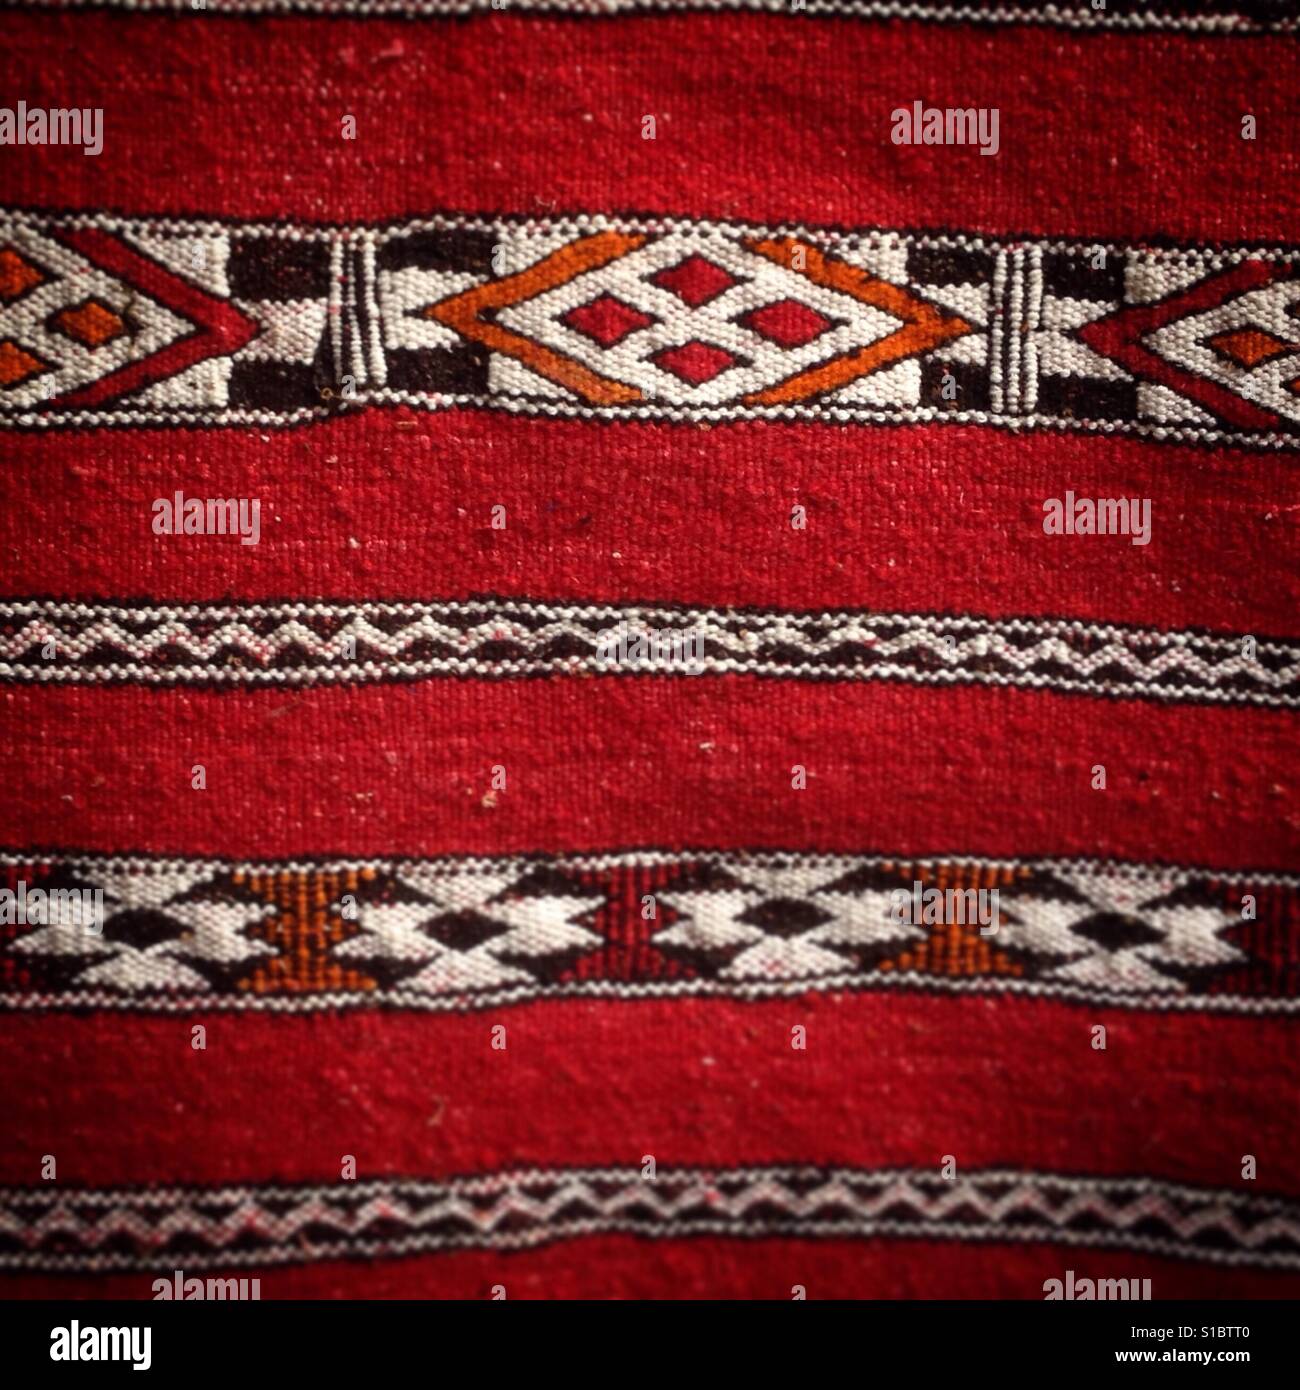 La alfombra roja de lana de ovino en Marruecos Foto de stock